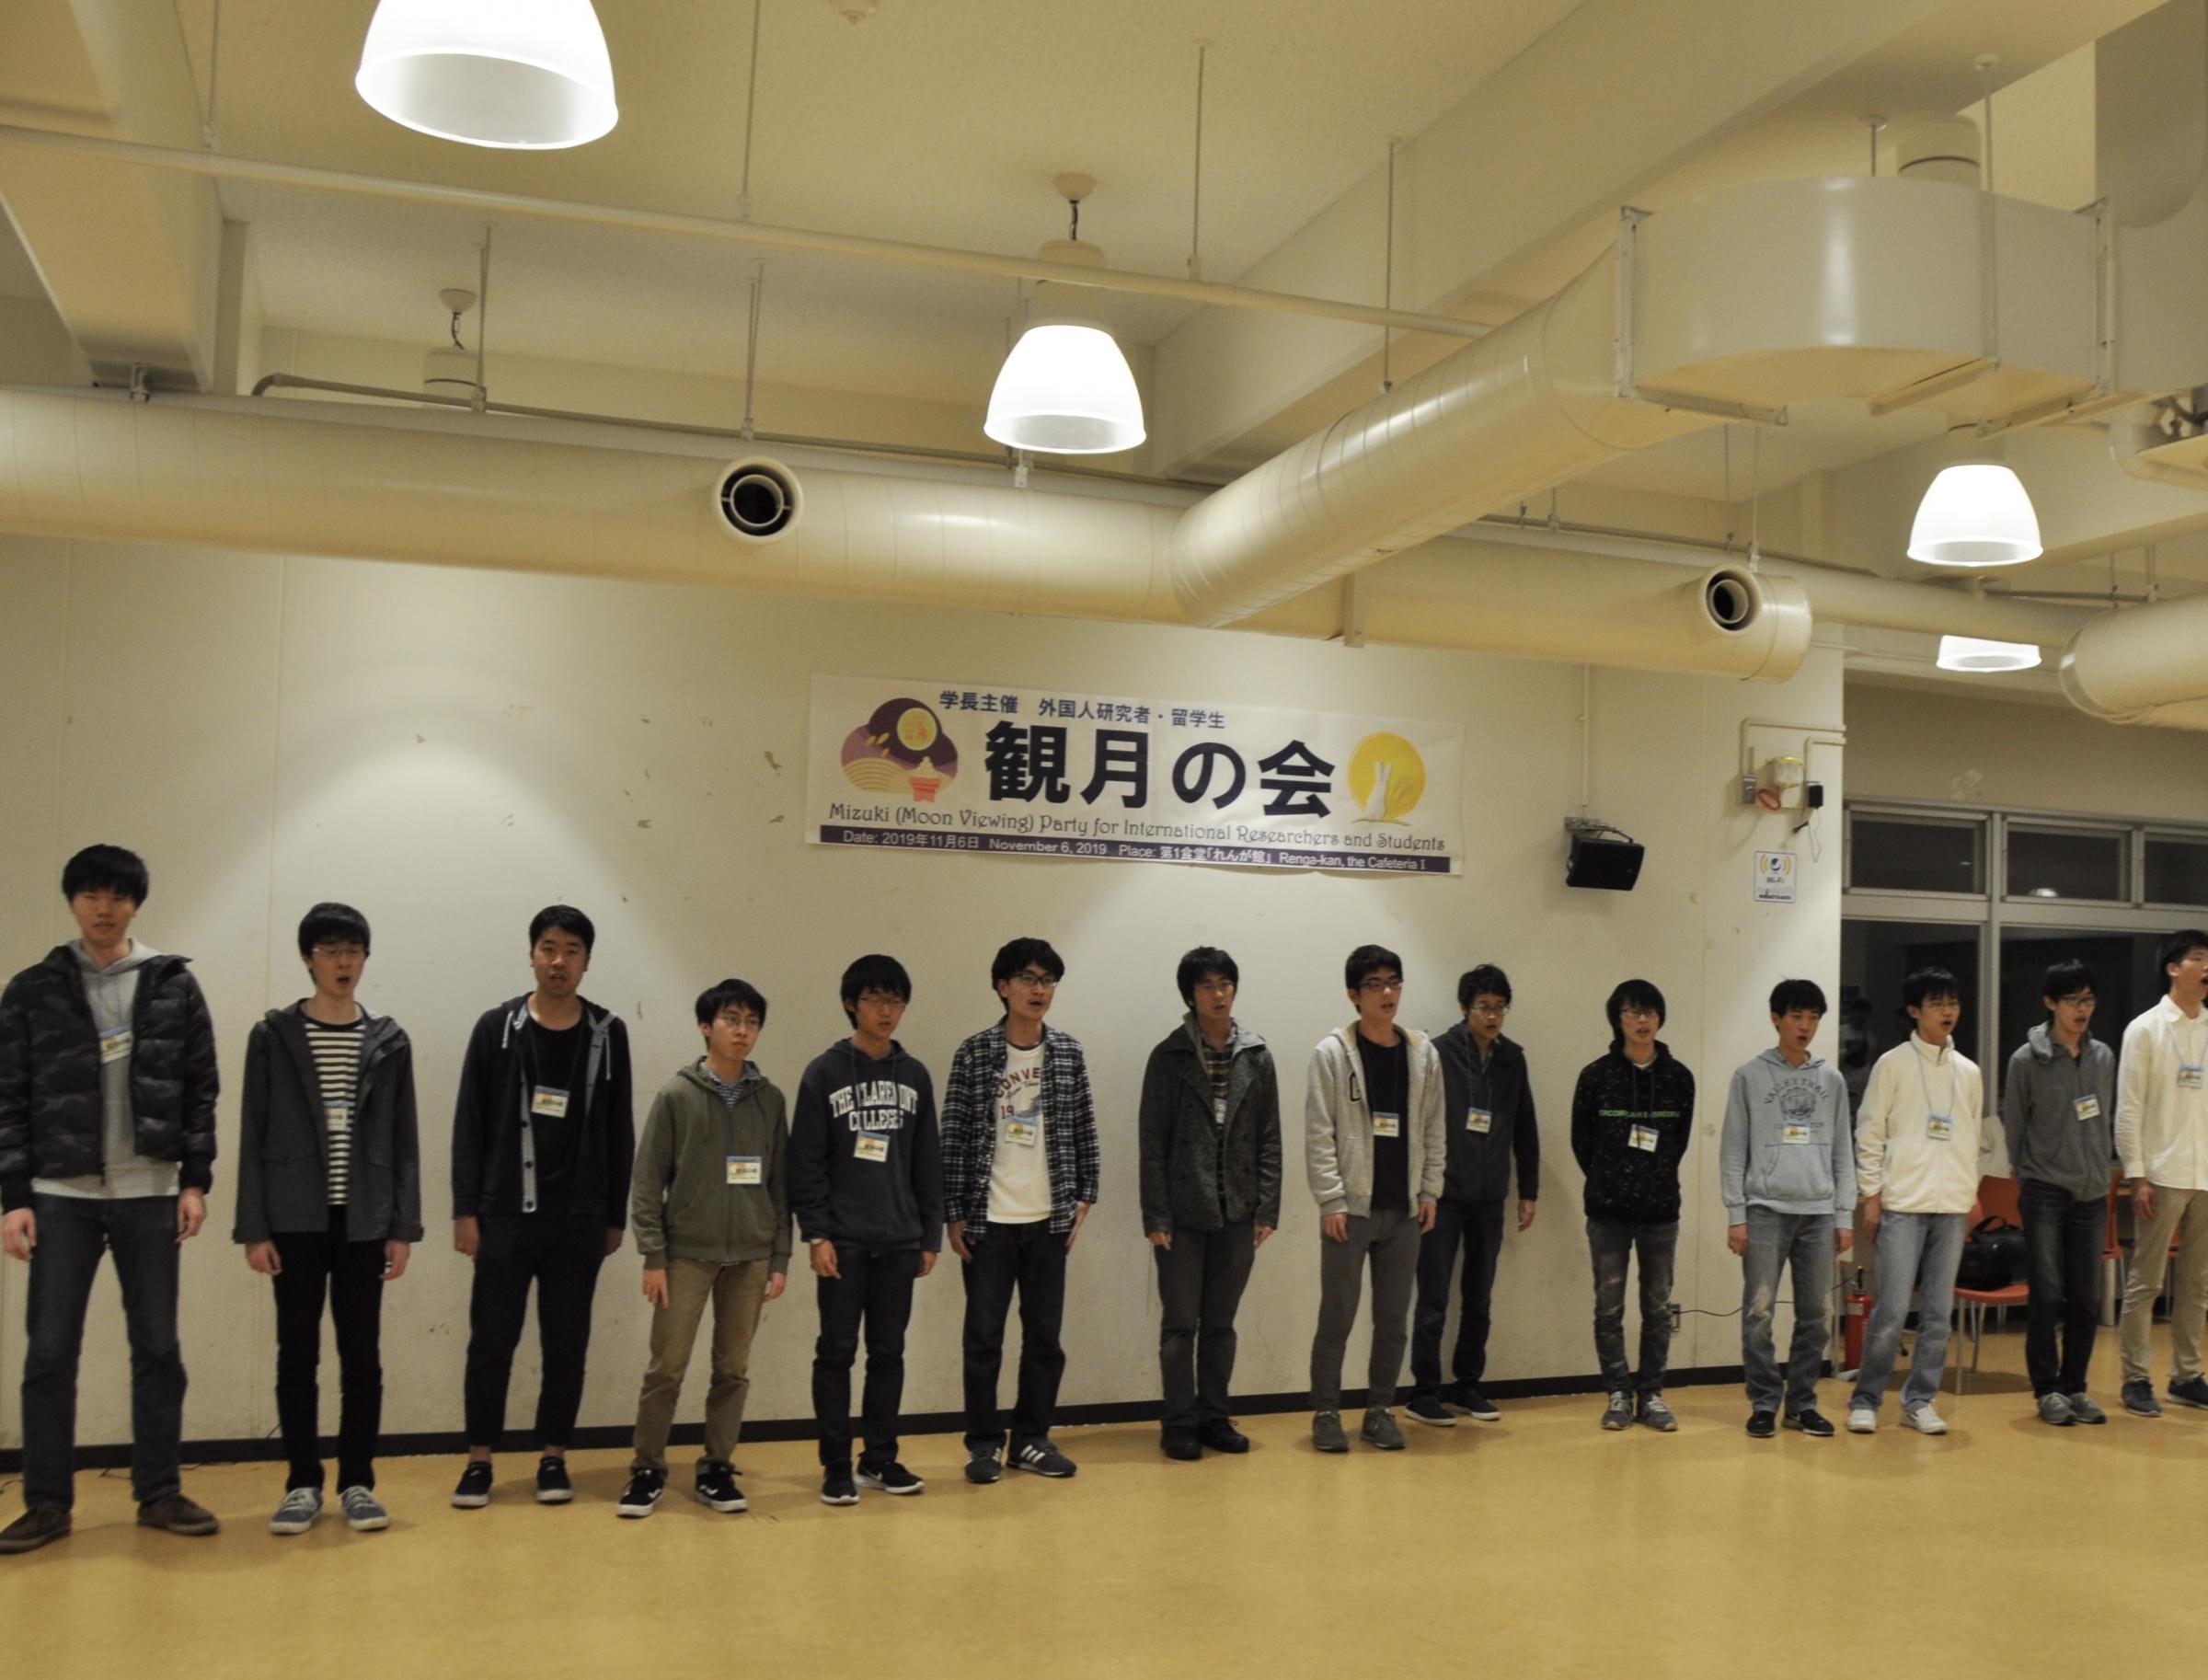 横浜国立大学グリークラブ有志の皆さんと学生歌「みはるかす」の斉唱